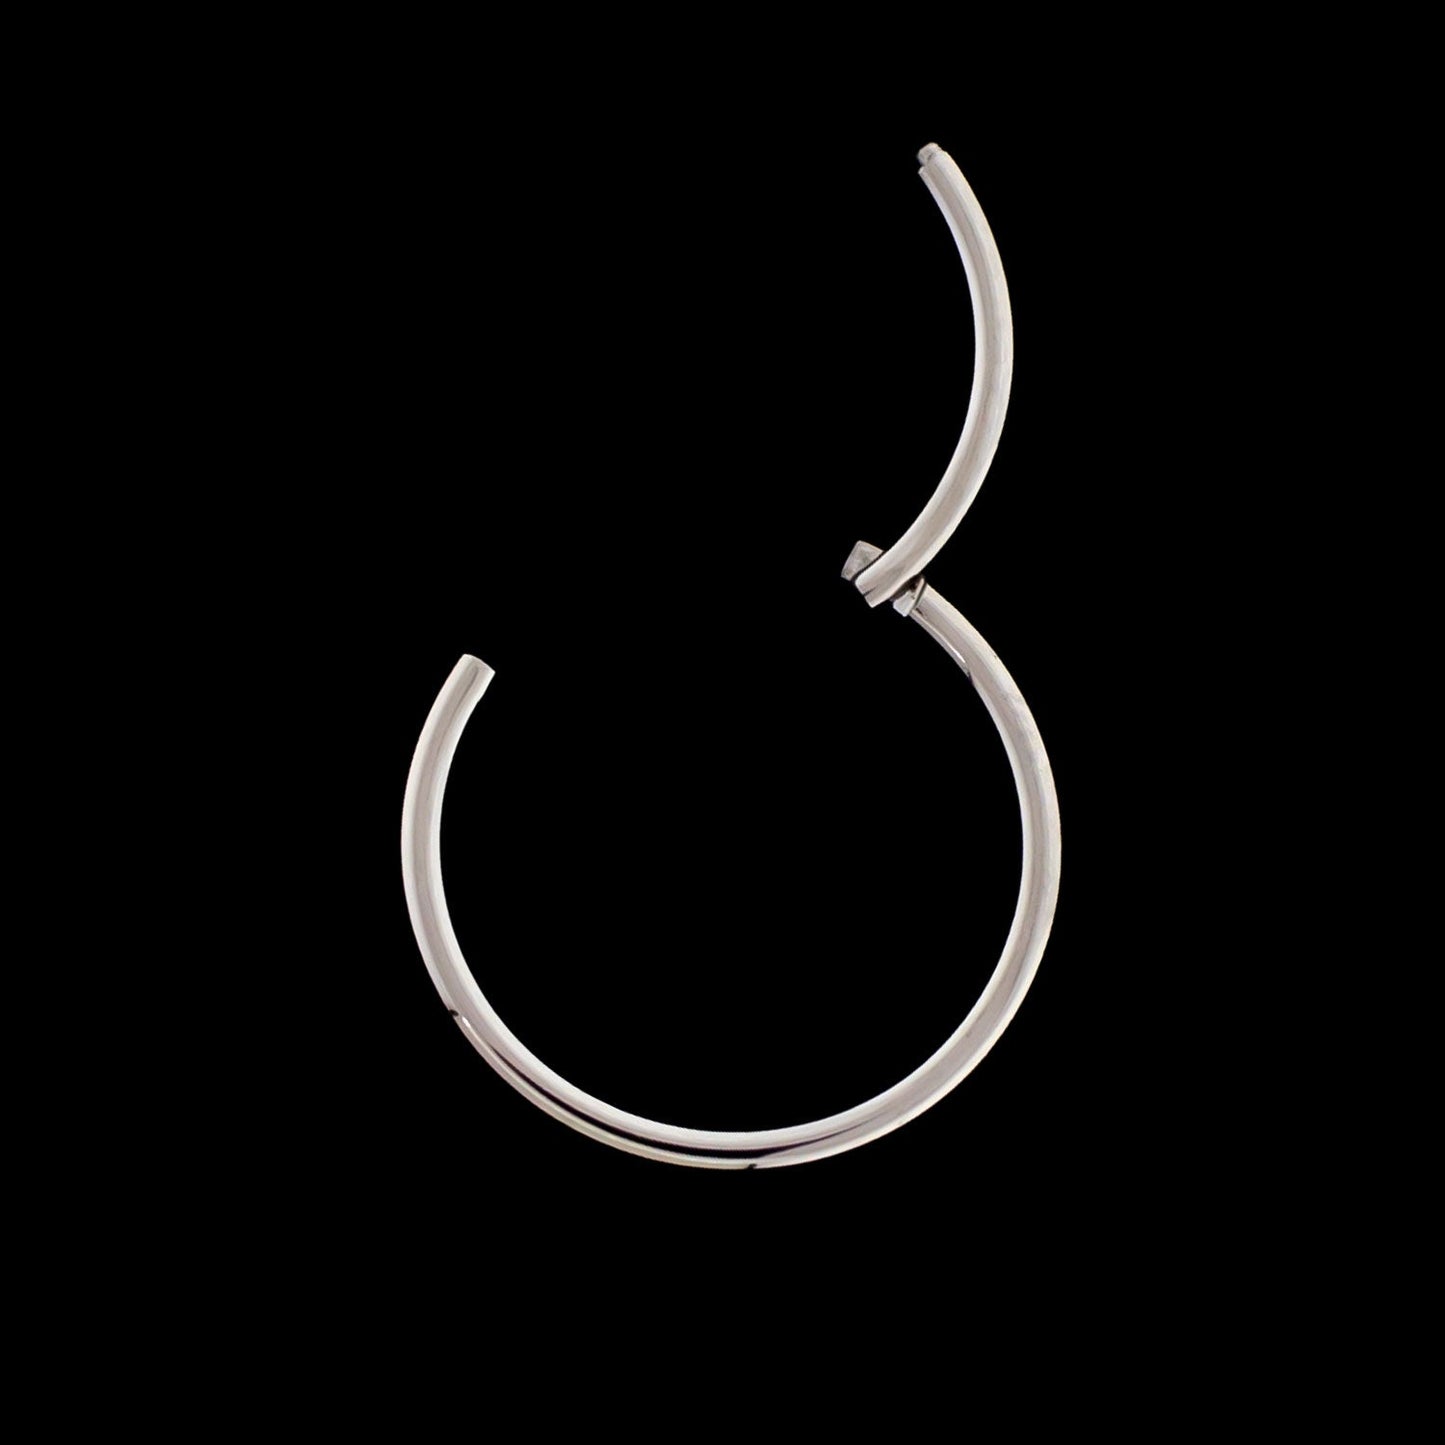 18G Hinged Segment Ring - Khrysos Jewelry